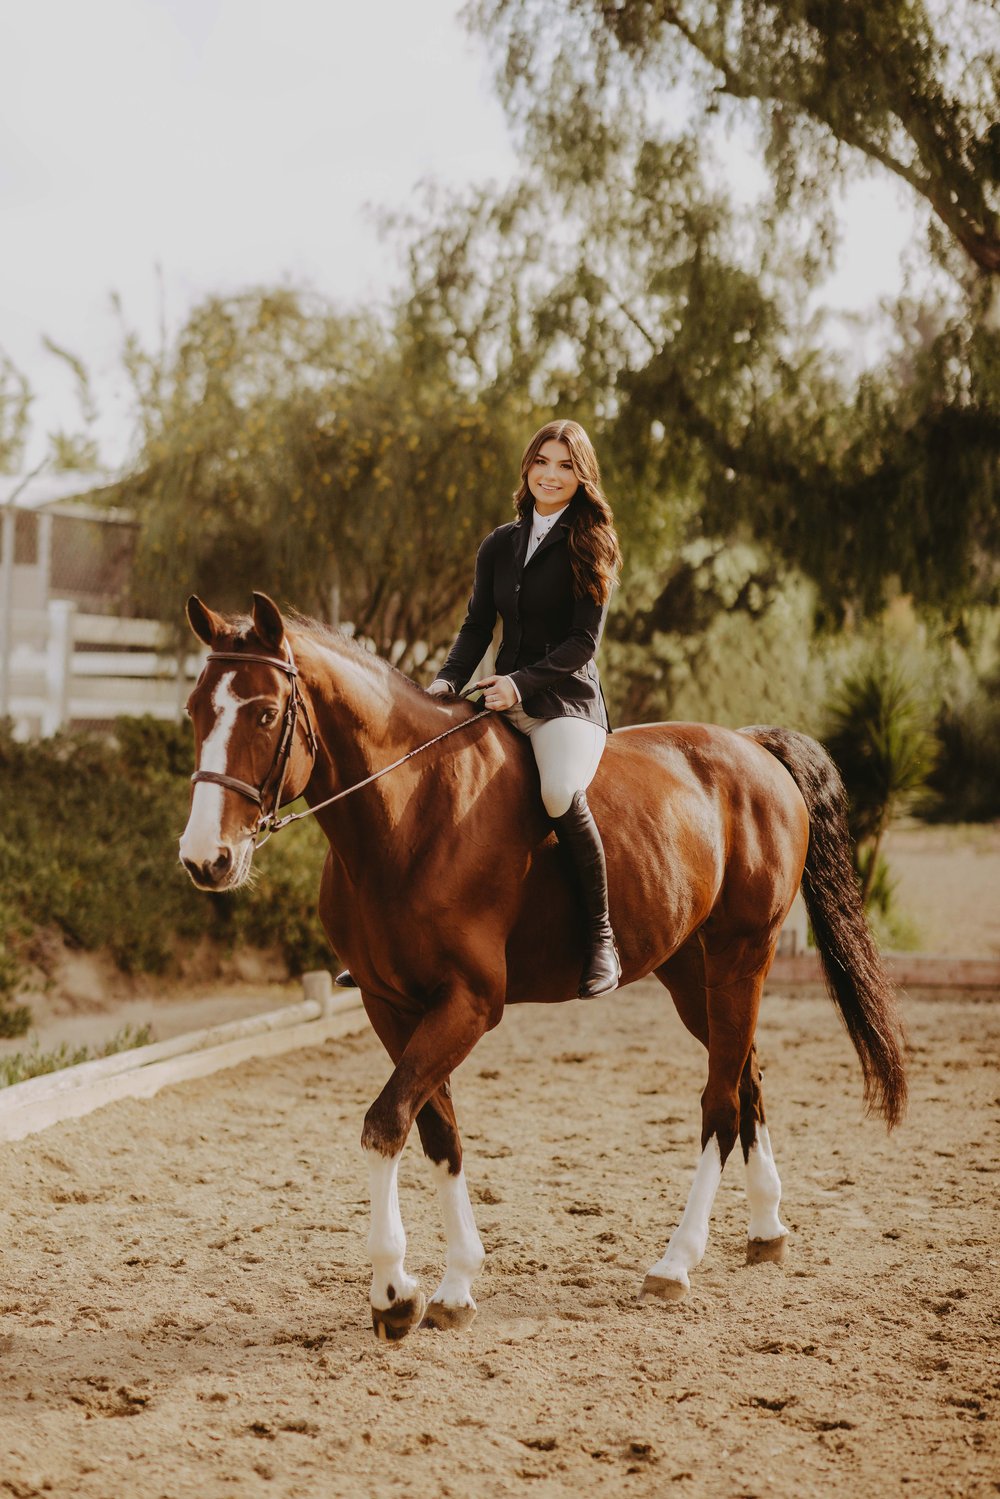  senior photos riding a horse 